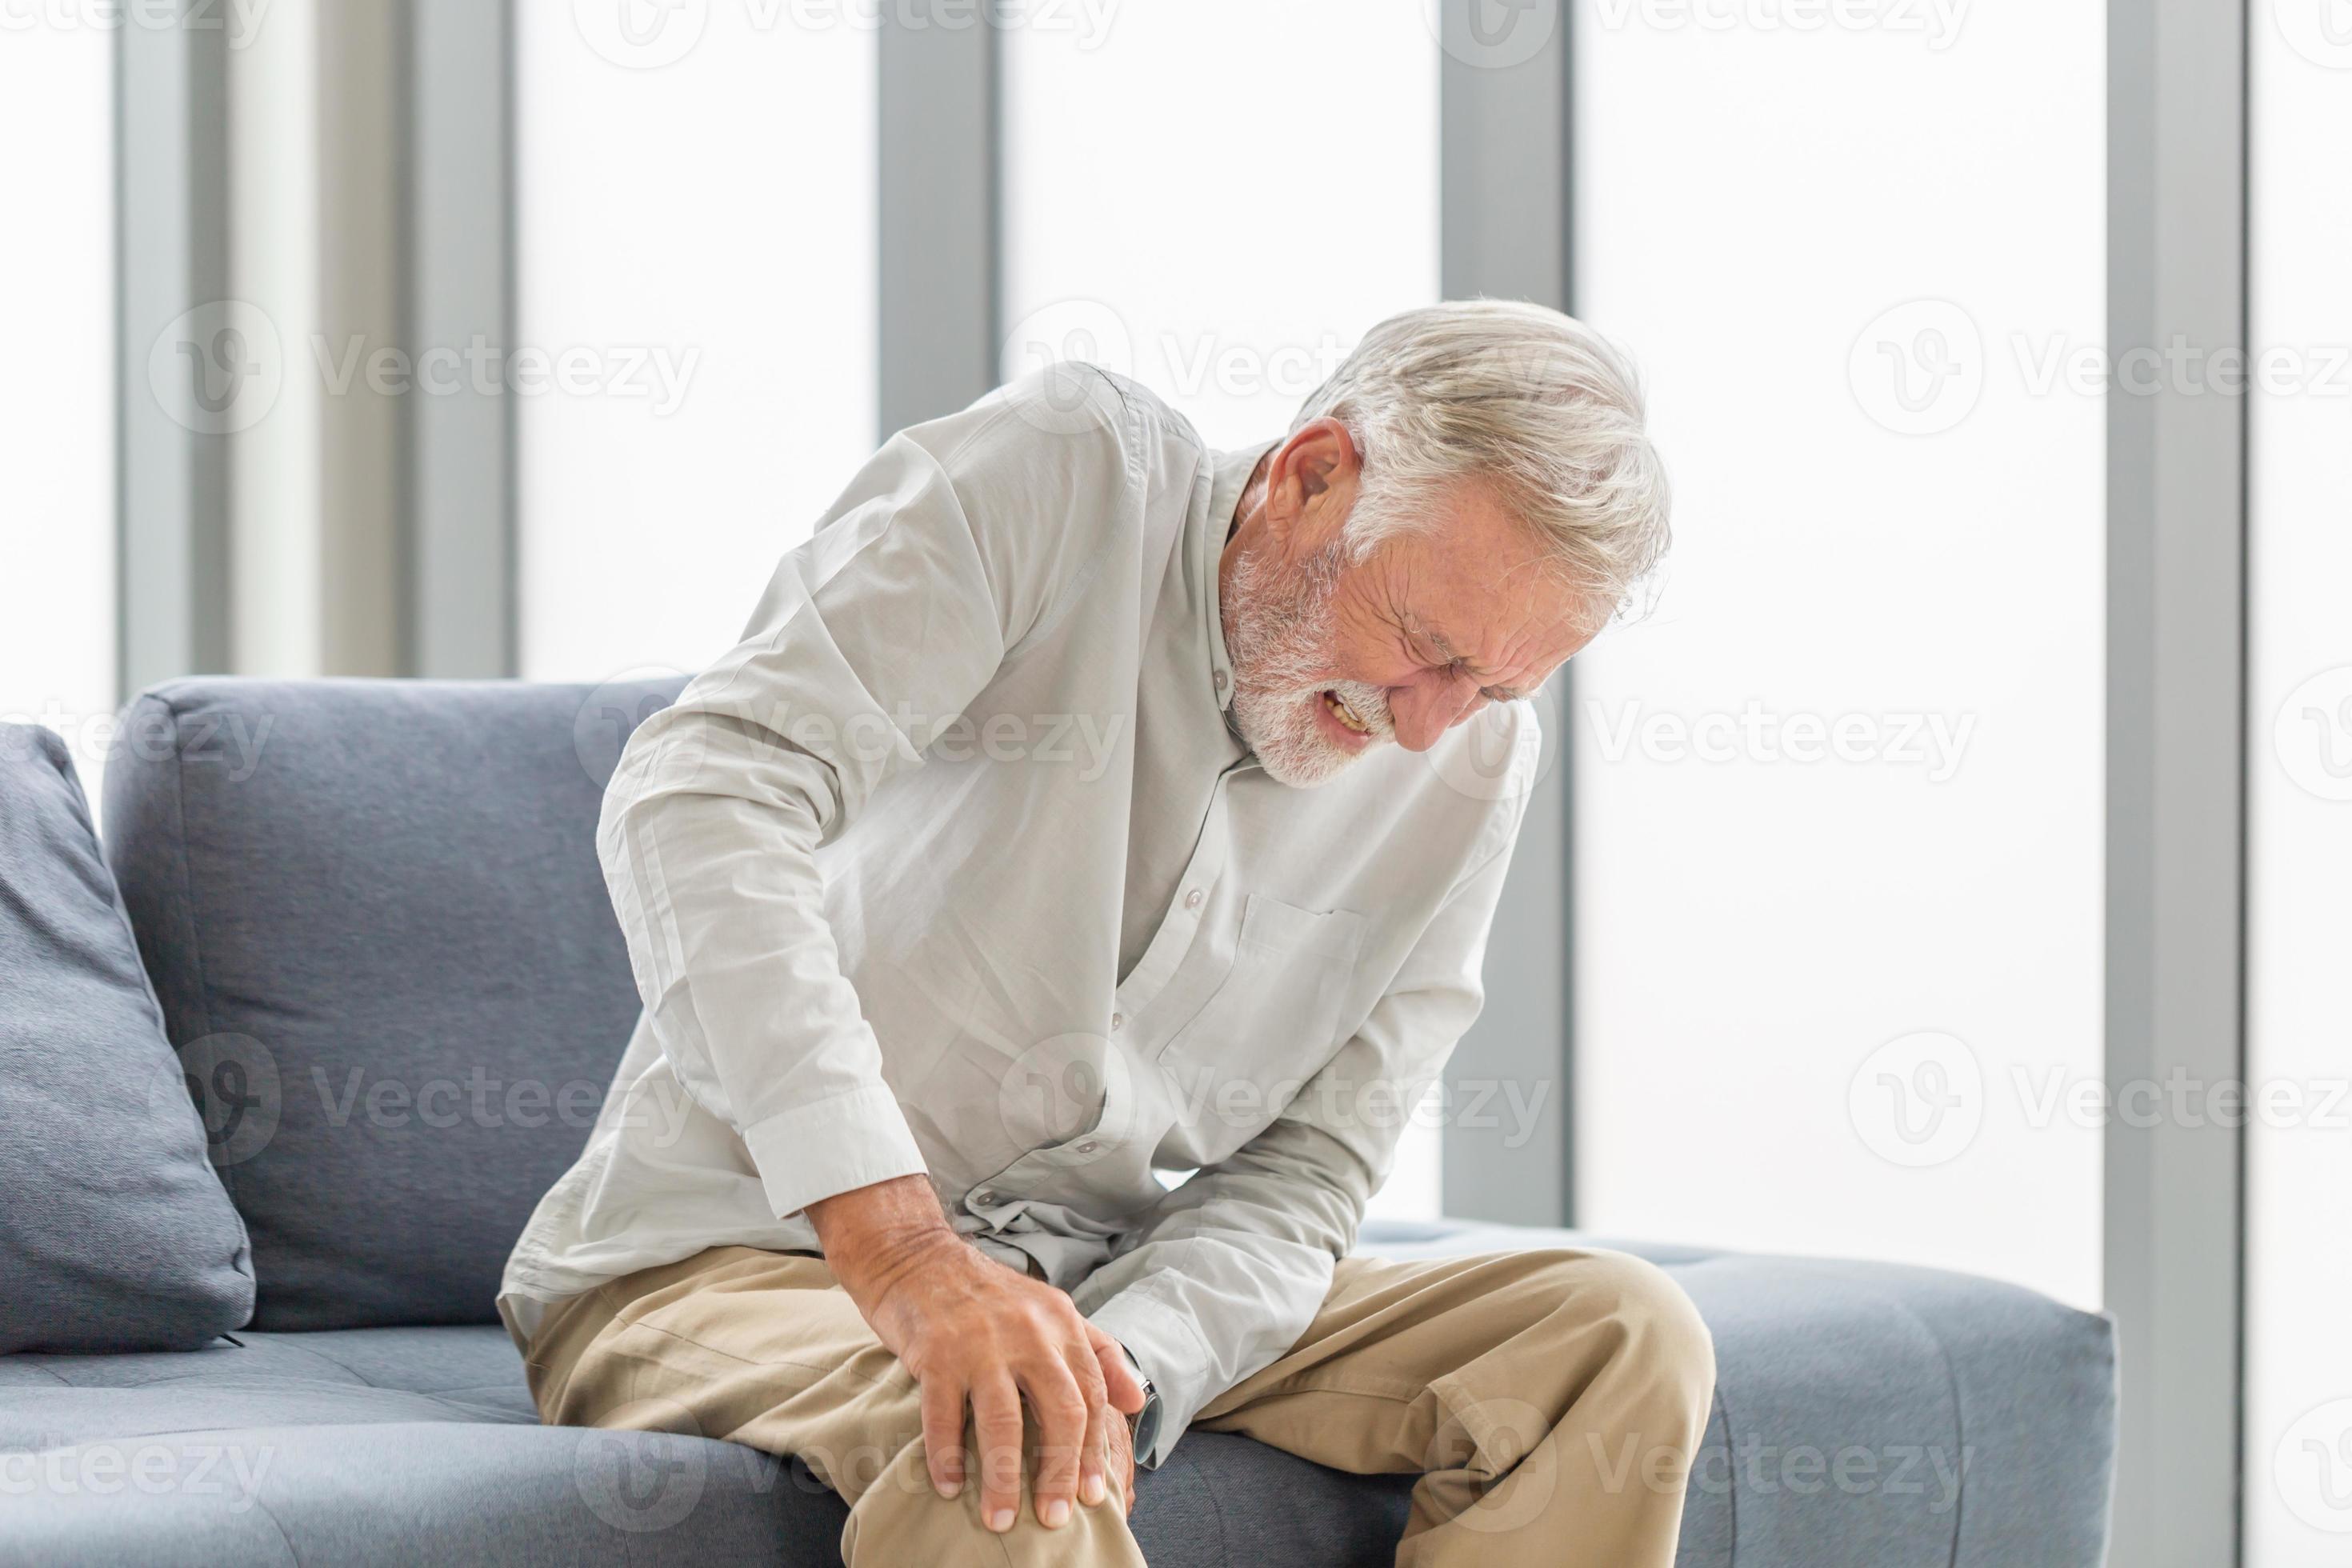 oude man lijdt aan kniepijn zittend op de bank in de woonkamer, oudere man lijdt aan kniepijn terwijl hij op de bank zit foto